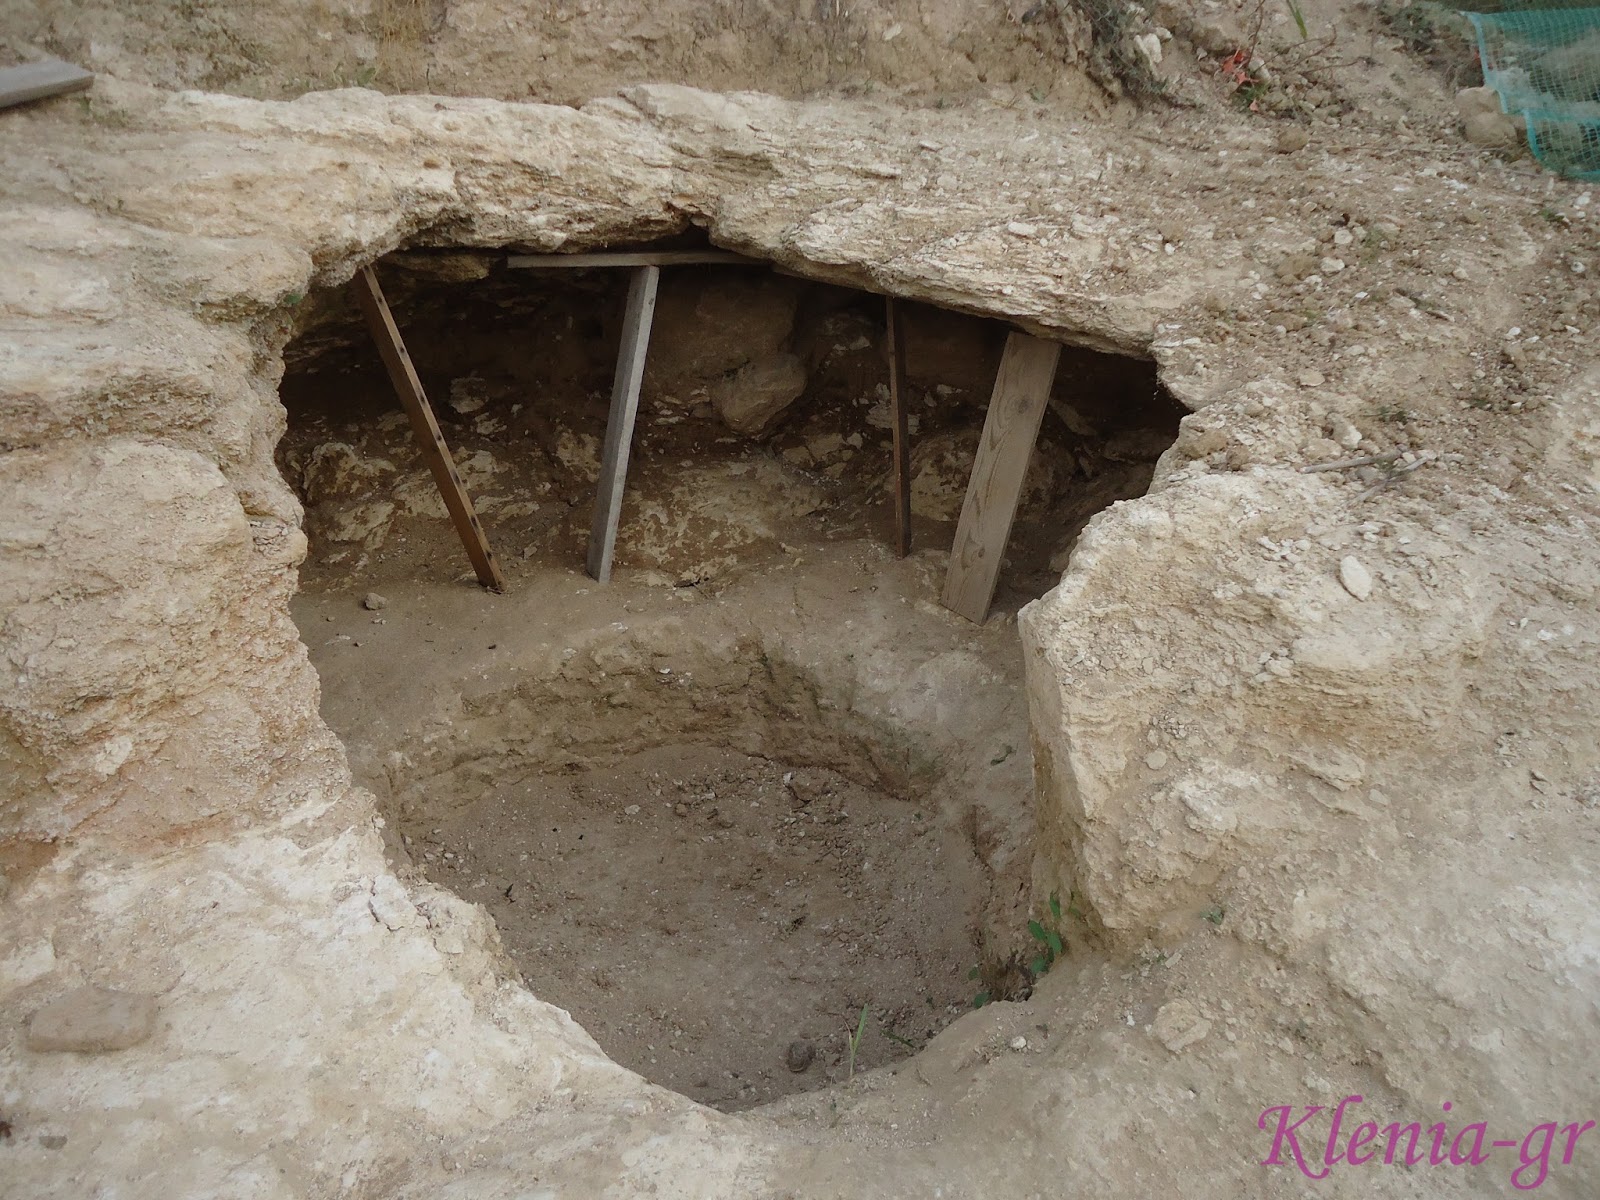 Βρήκαν κατάλοιπα αρχαίων τάφων στην Κρήτη -Αγγεία και δόρατα σε άριστη κατάσταση (φωτο)